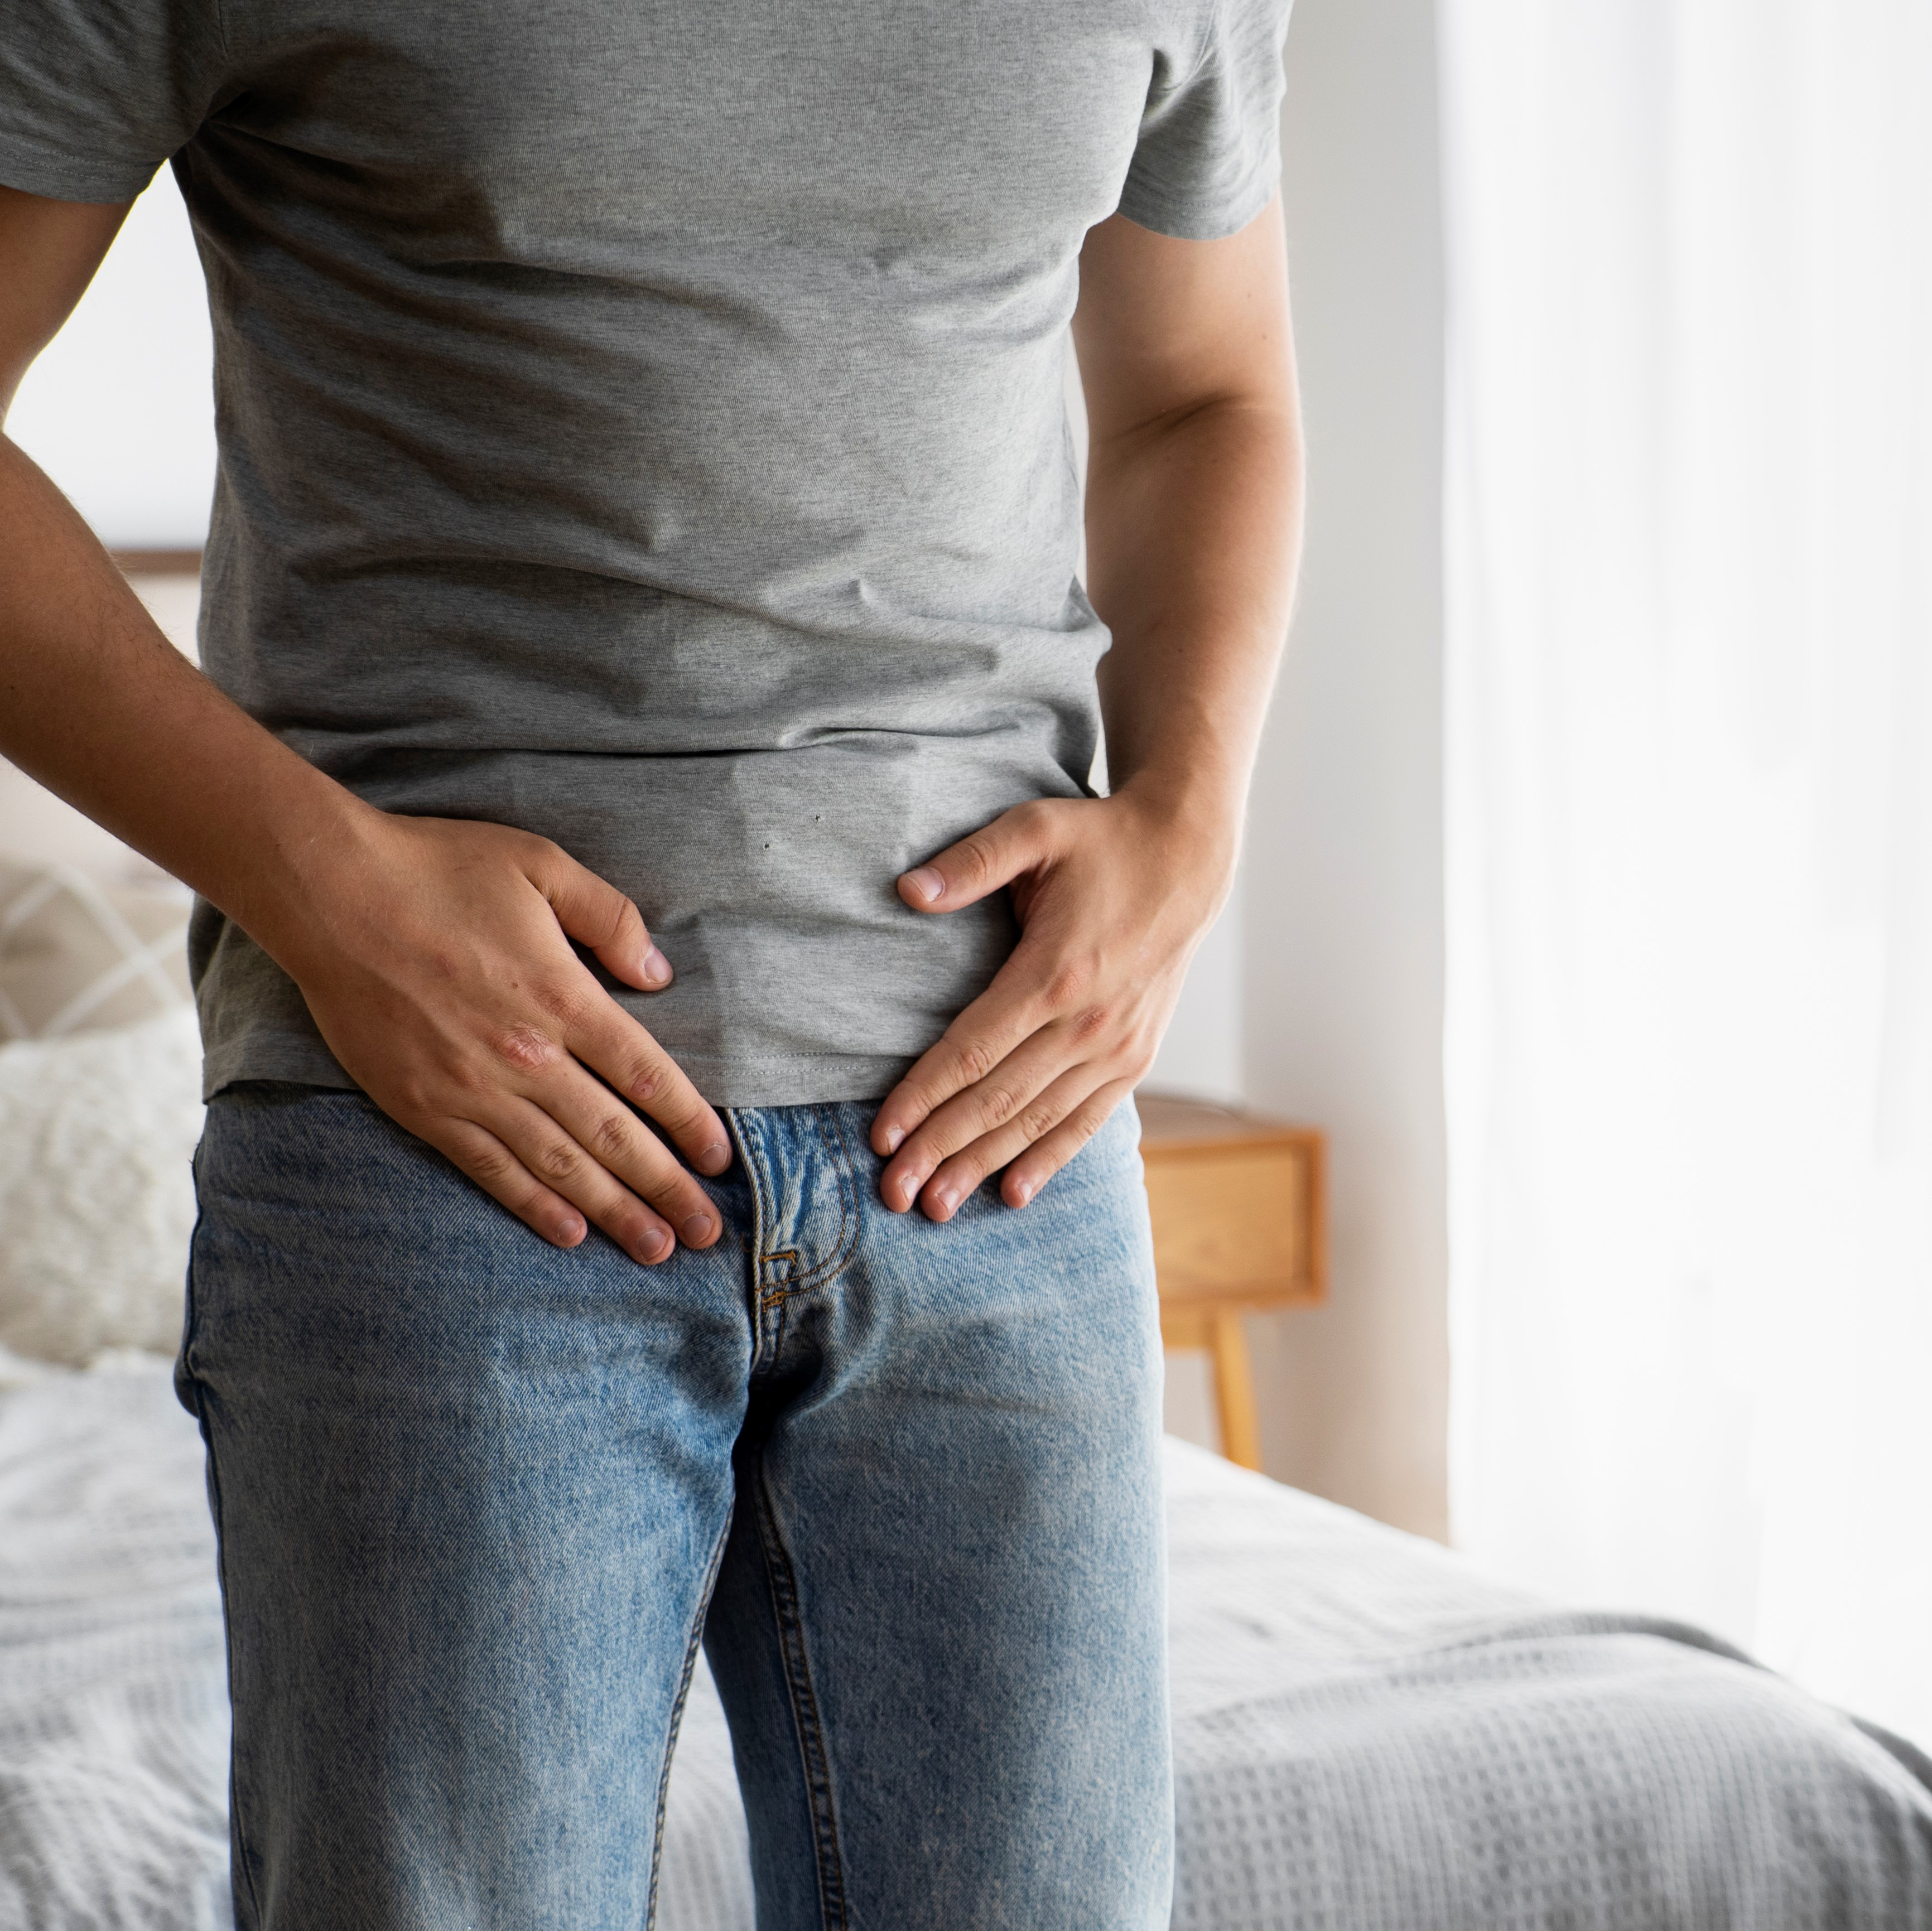 Comment soulager les troubles de la prostate?